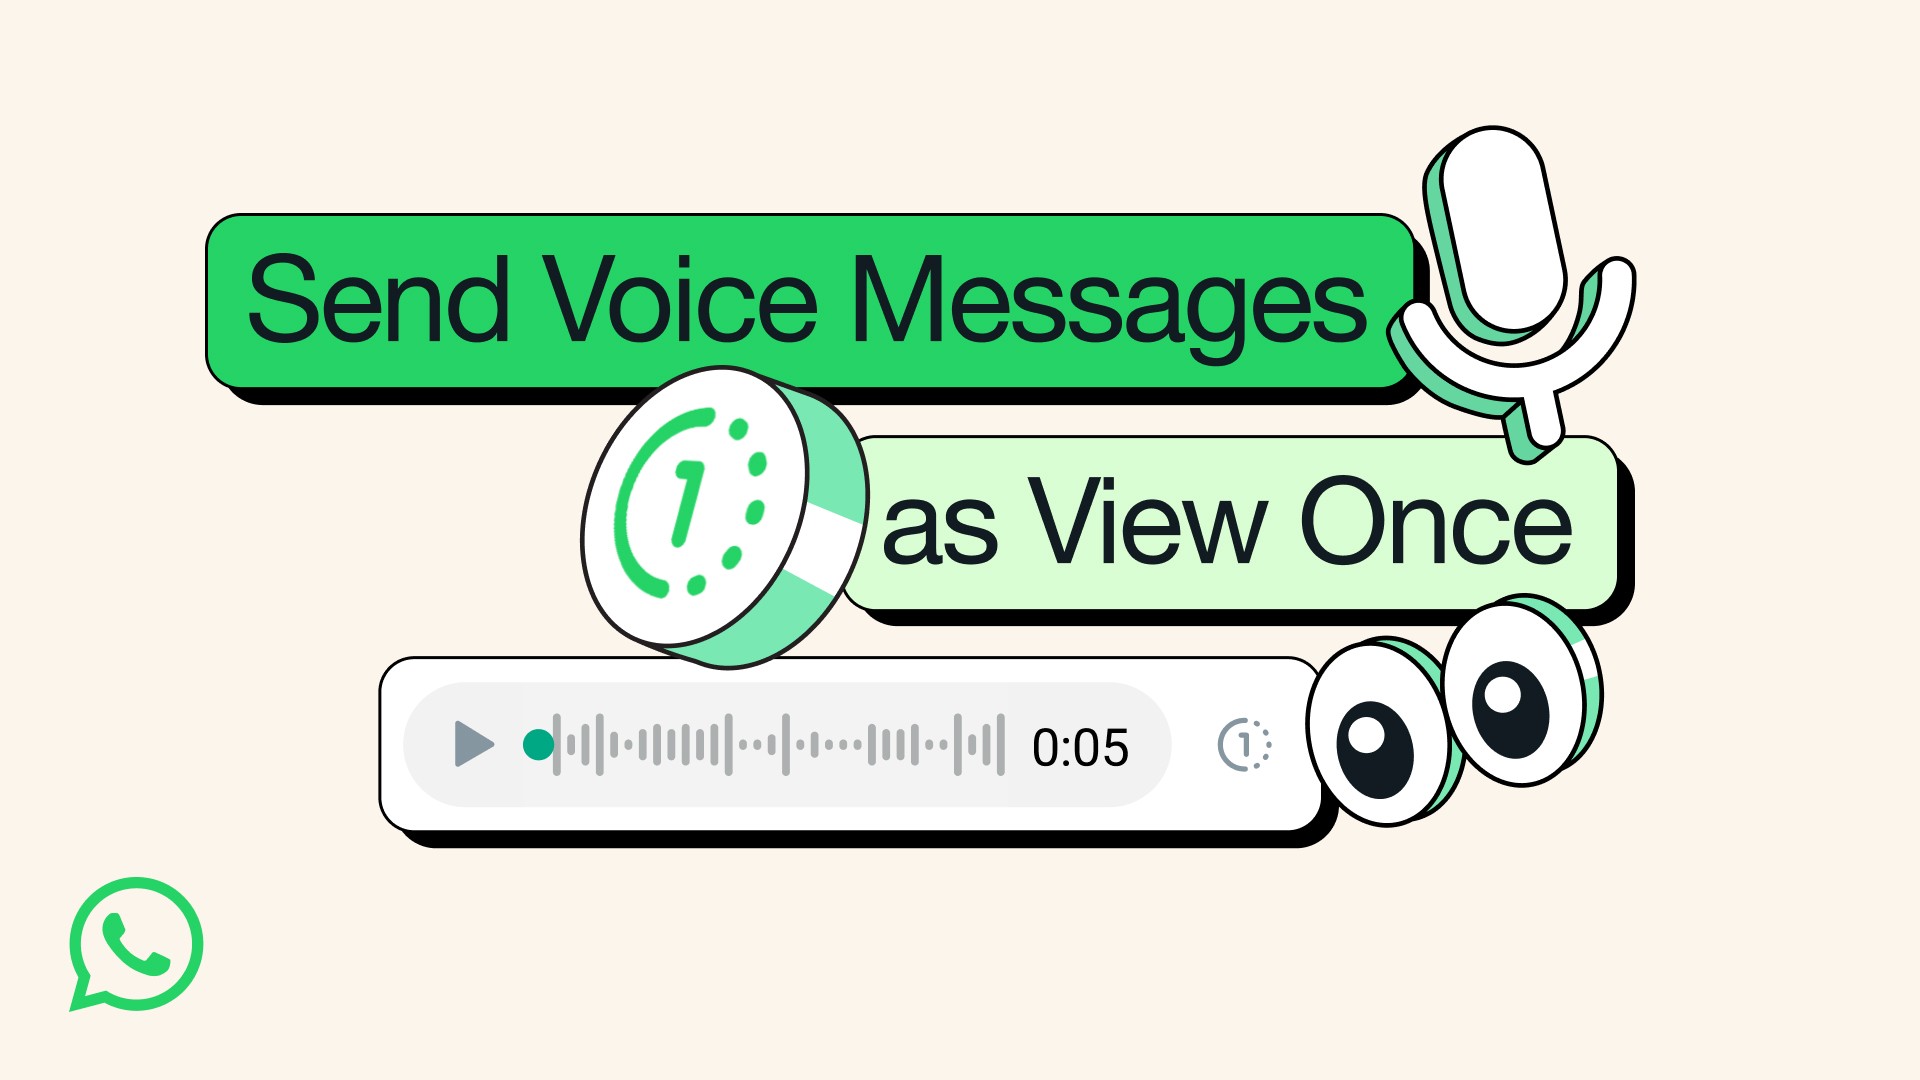 WhatsApp znikające wiadomości głosowe